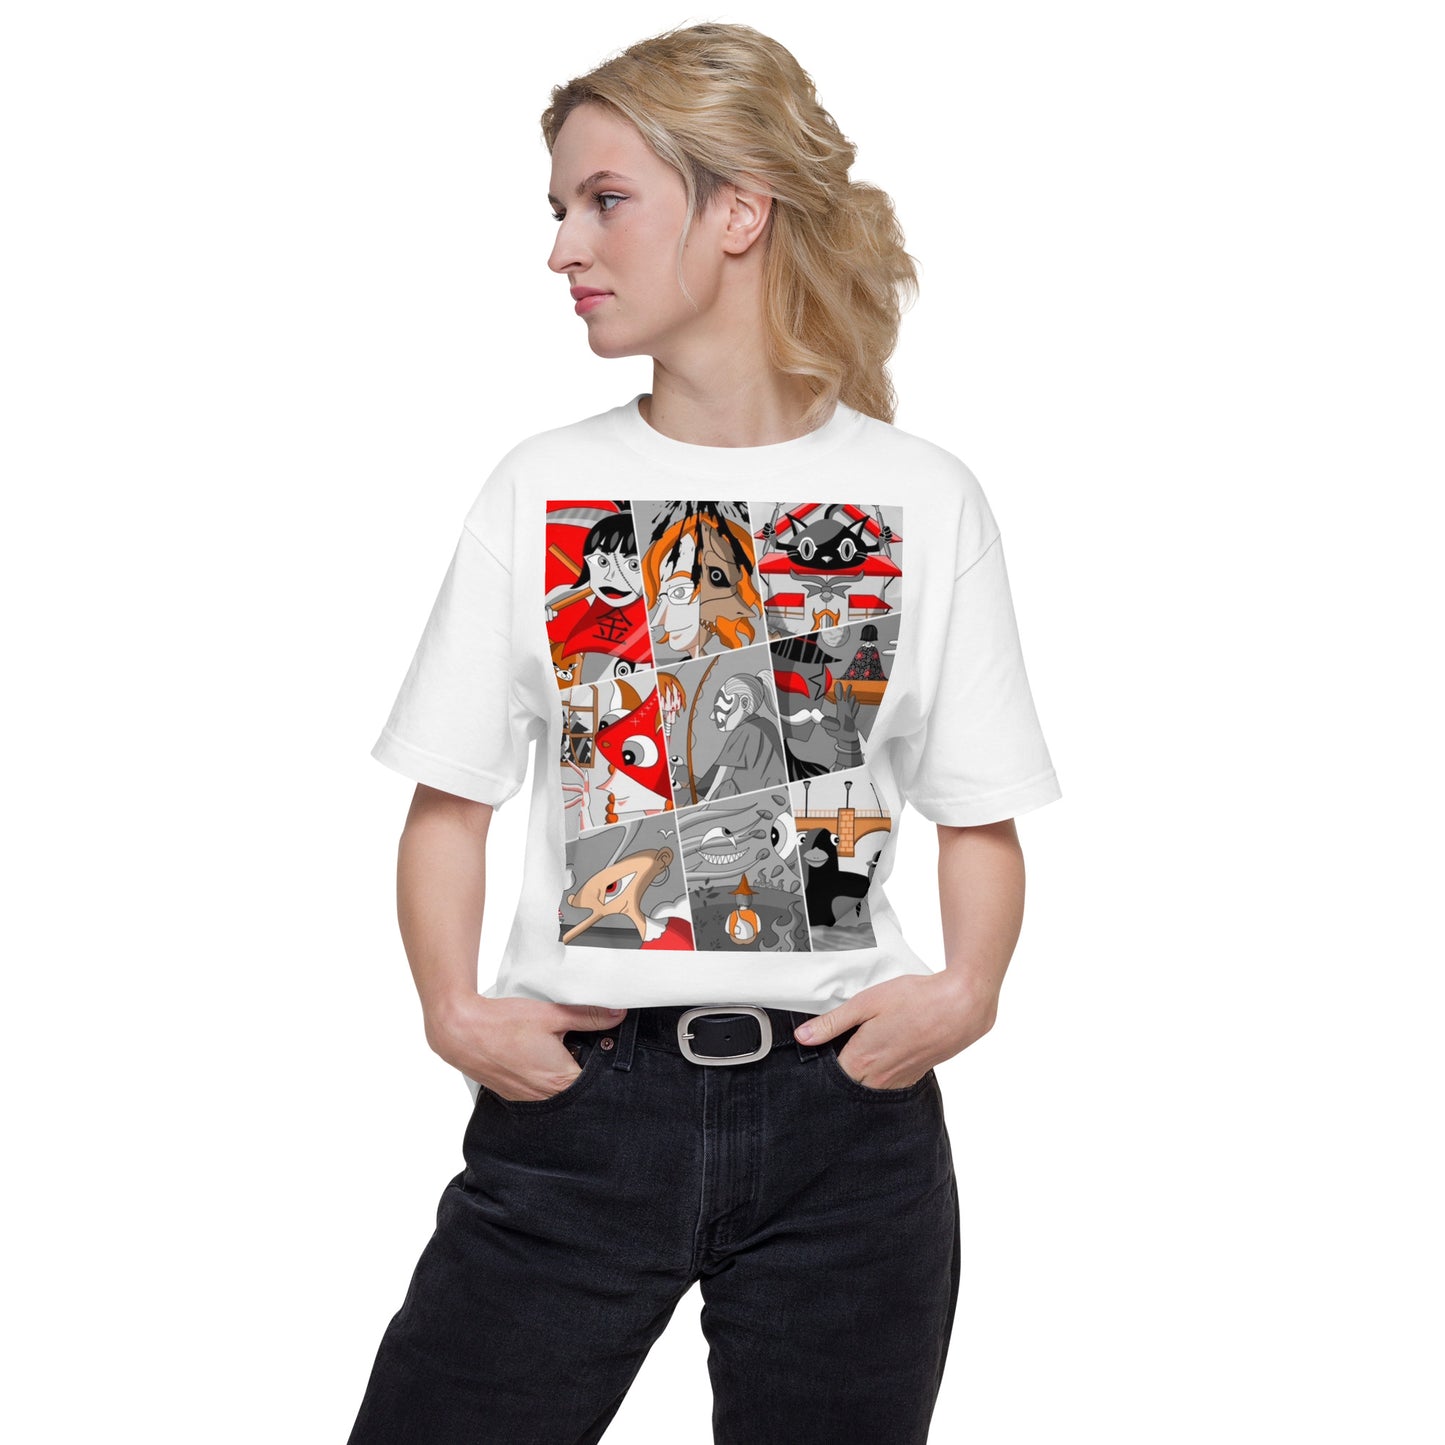 035_Ava-12-前面プリントTシャツ-アートをデザイン